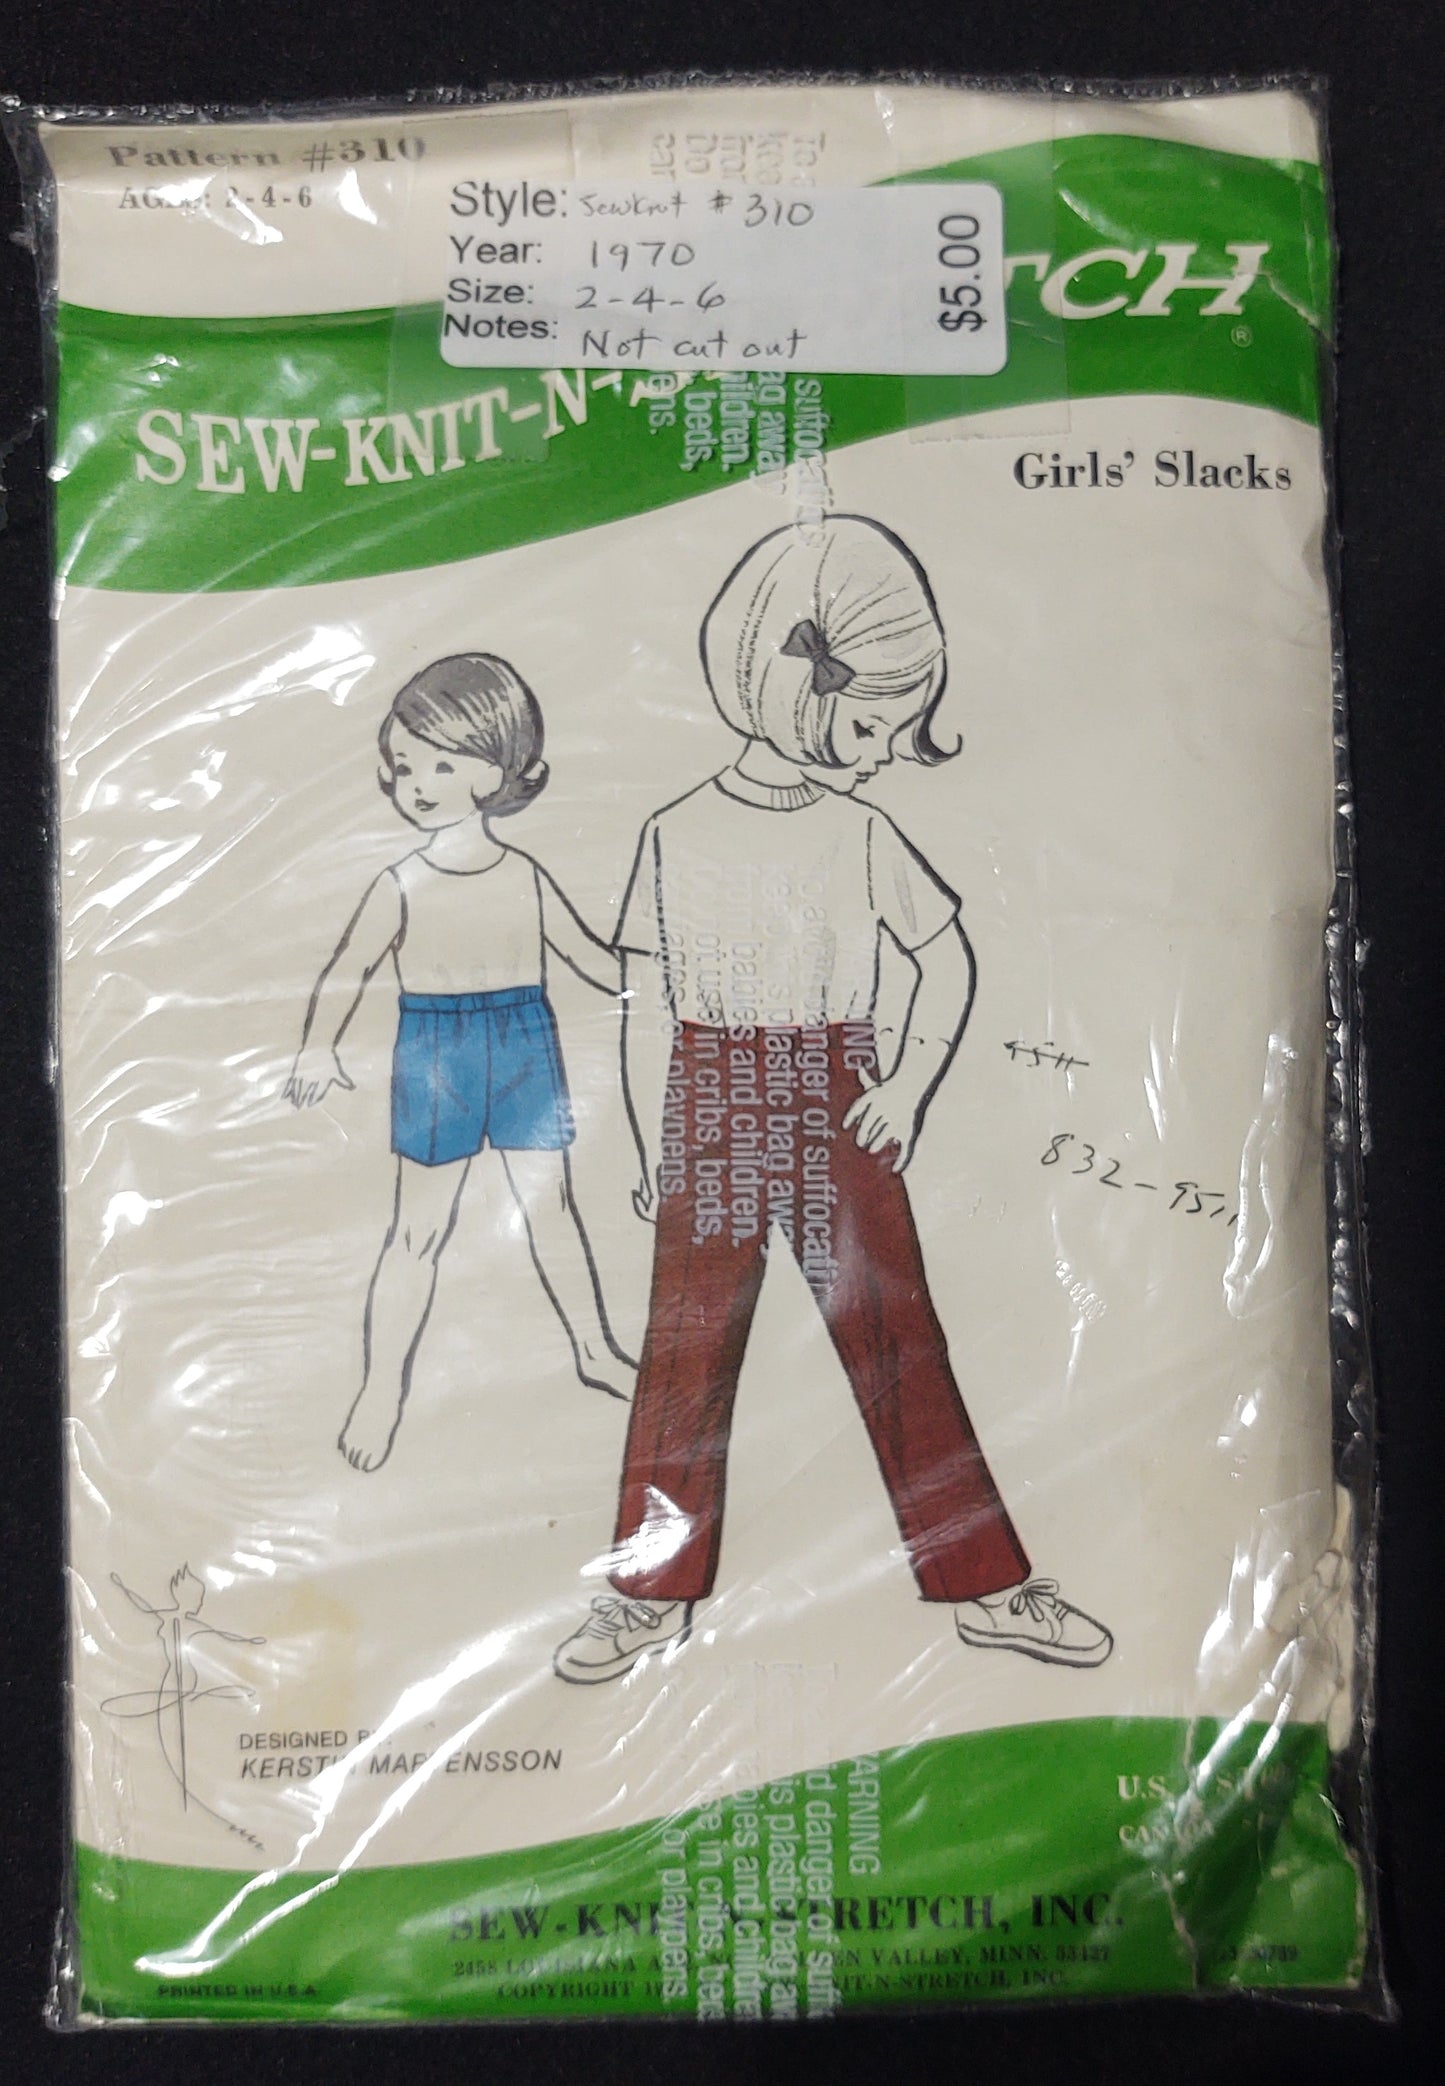 Sew-knit-n-stretch